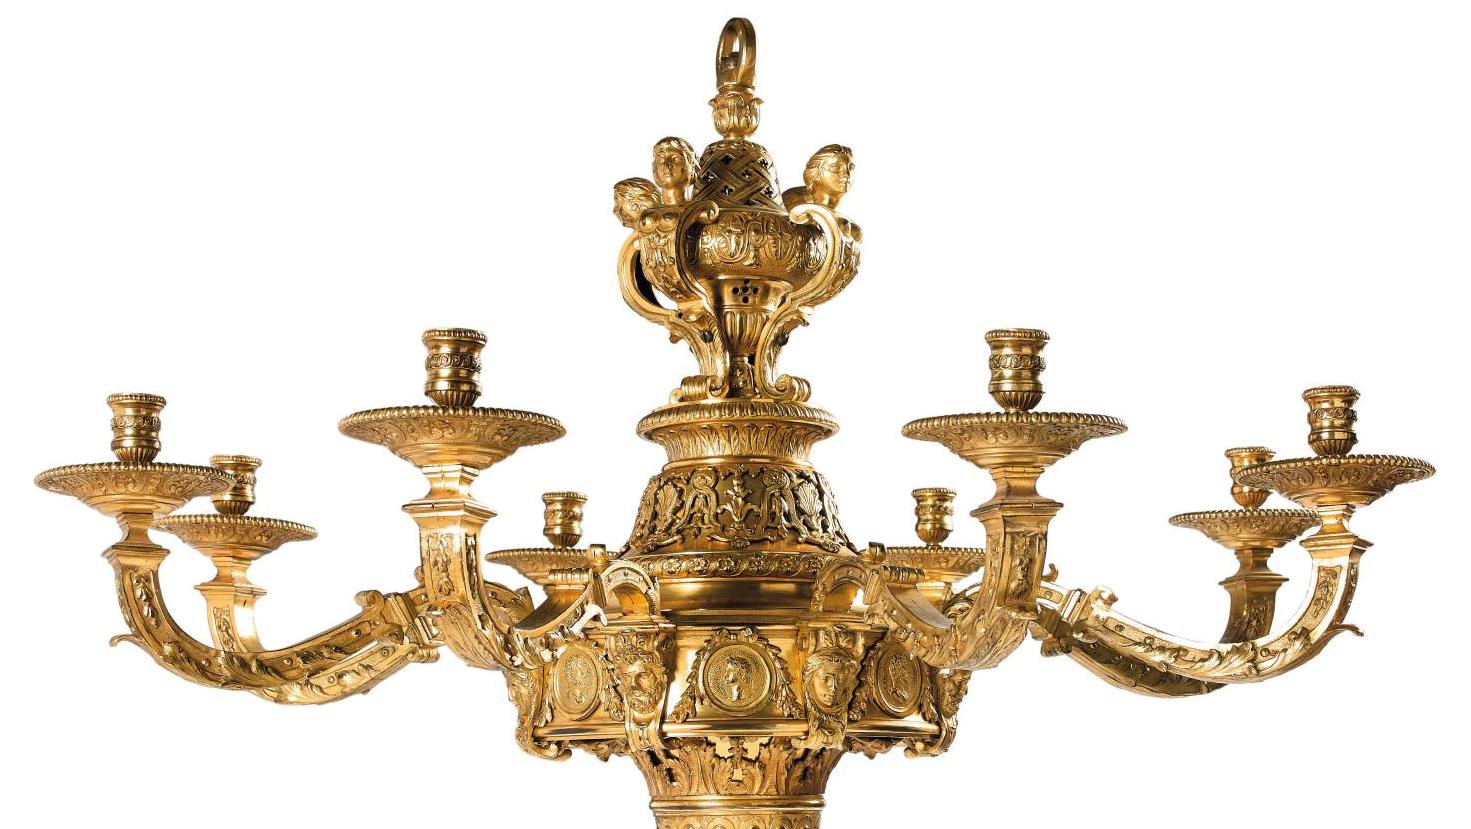 Lustre en bronze ciselé et doré à décor de têtes d’empereurs romains, jeunes hommes... Un lustre du XVIIIe ou le bronze en majesté